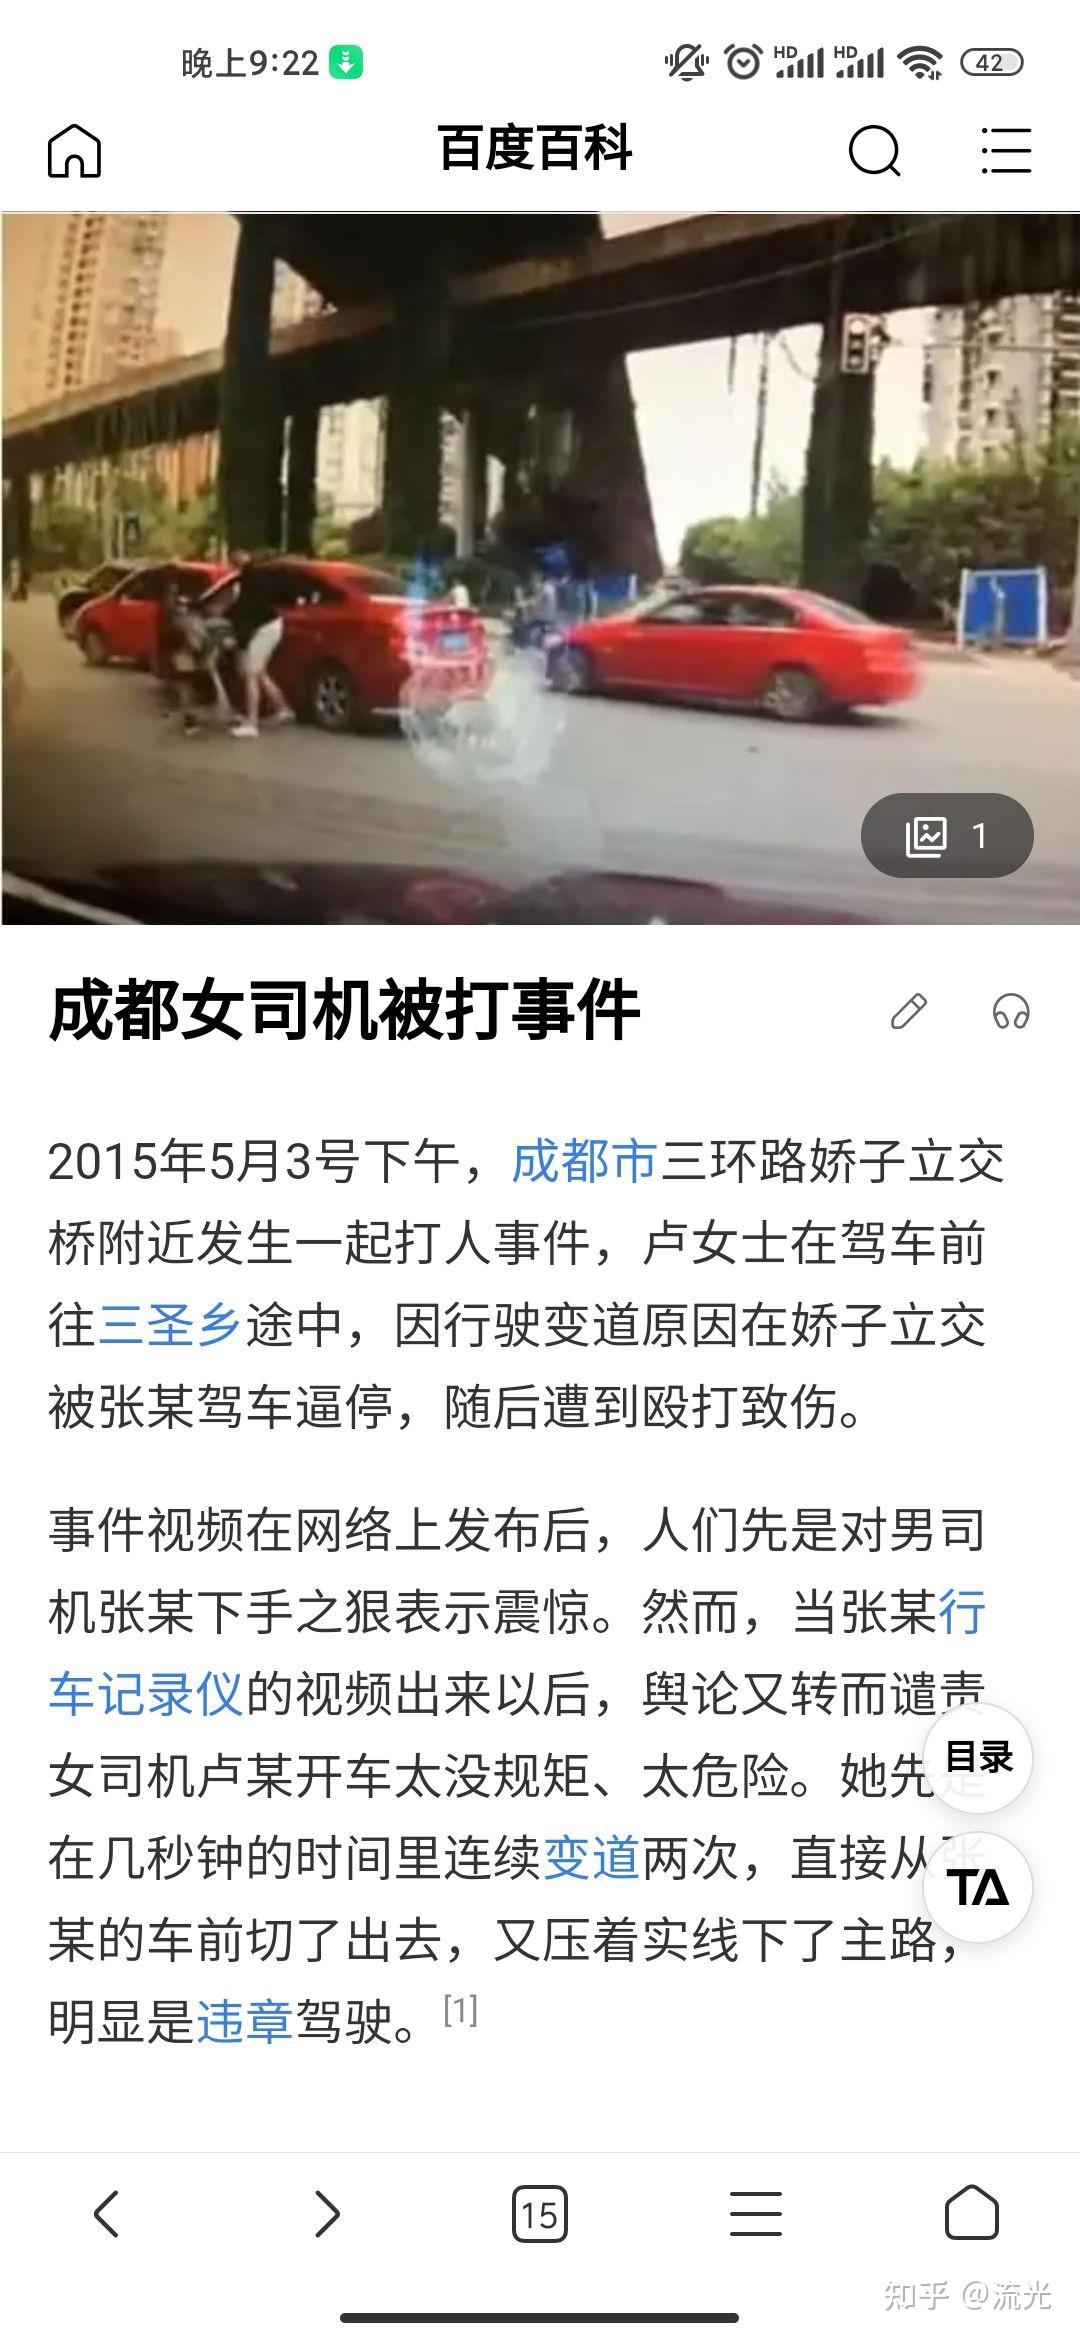 女司机被撞飞后遭自己车碾压 - 搜狐视频